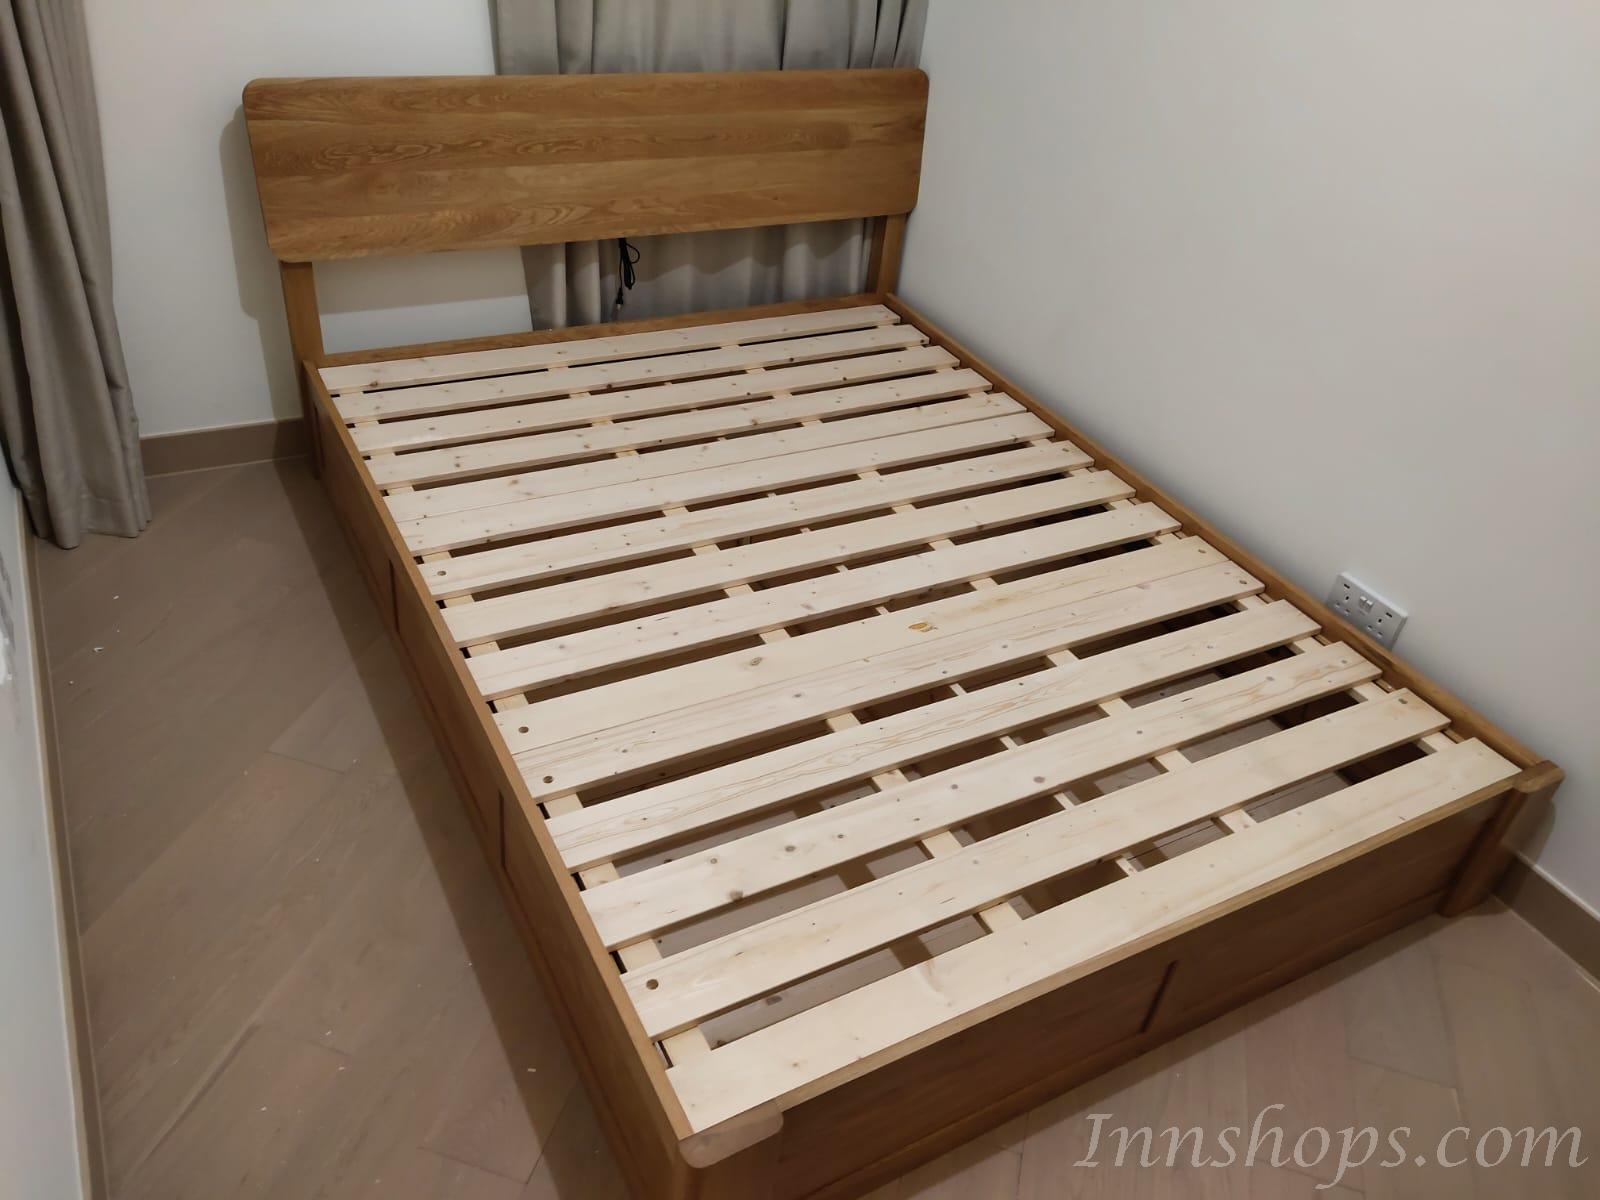 北歐實木系列 白橡木雙人床*4呎/5呎/6呎(不包床褥) (IS5736)